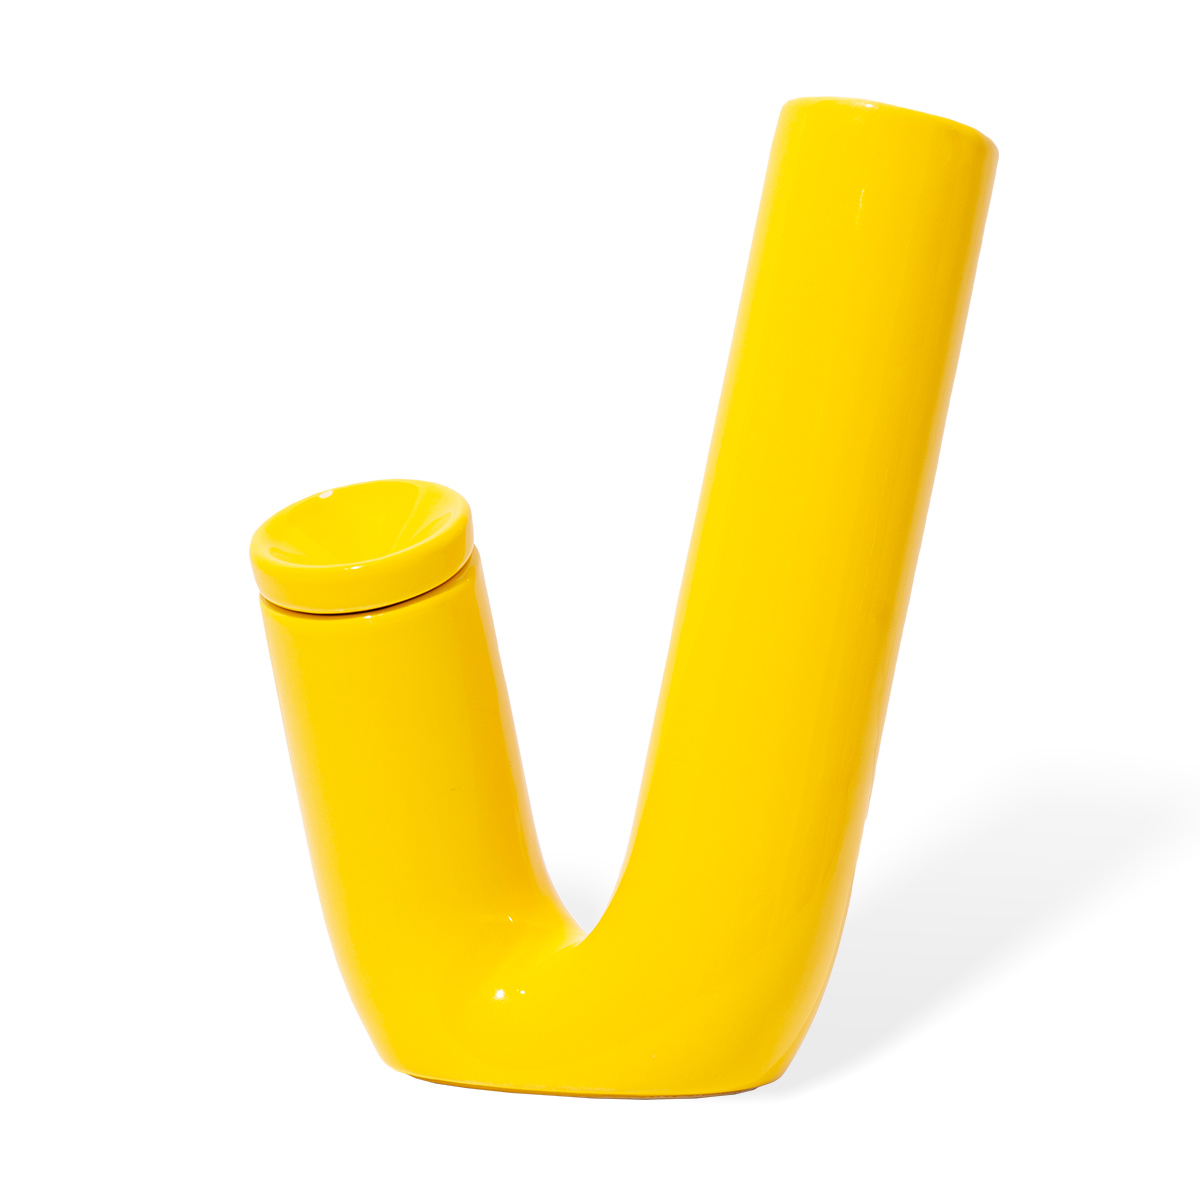 WEED'D – VS001 yellow ceramic bong